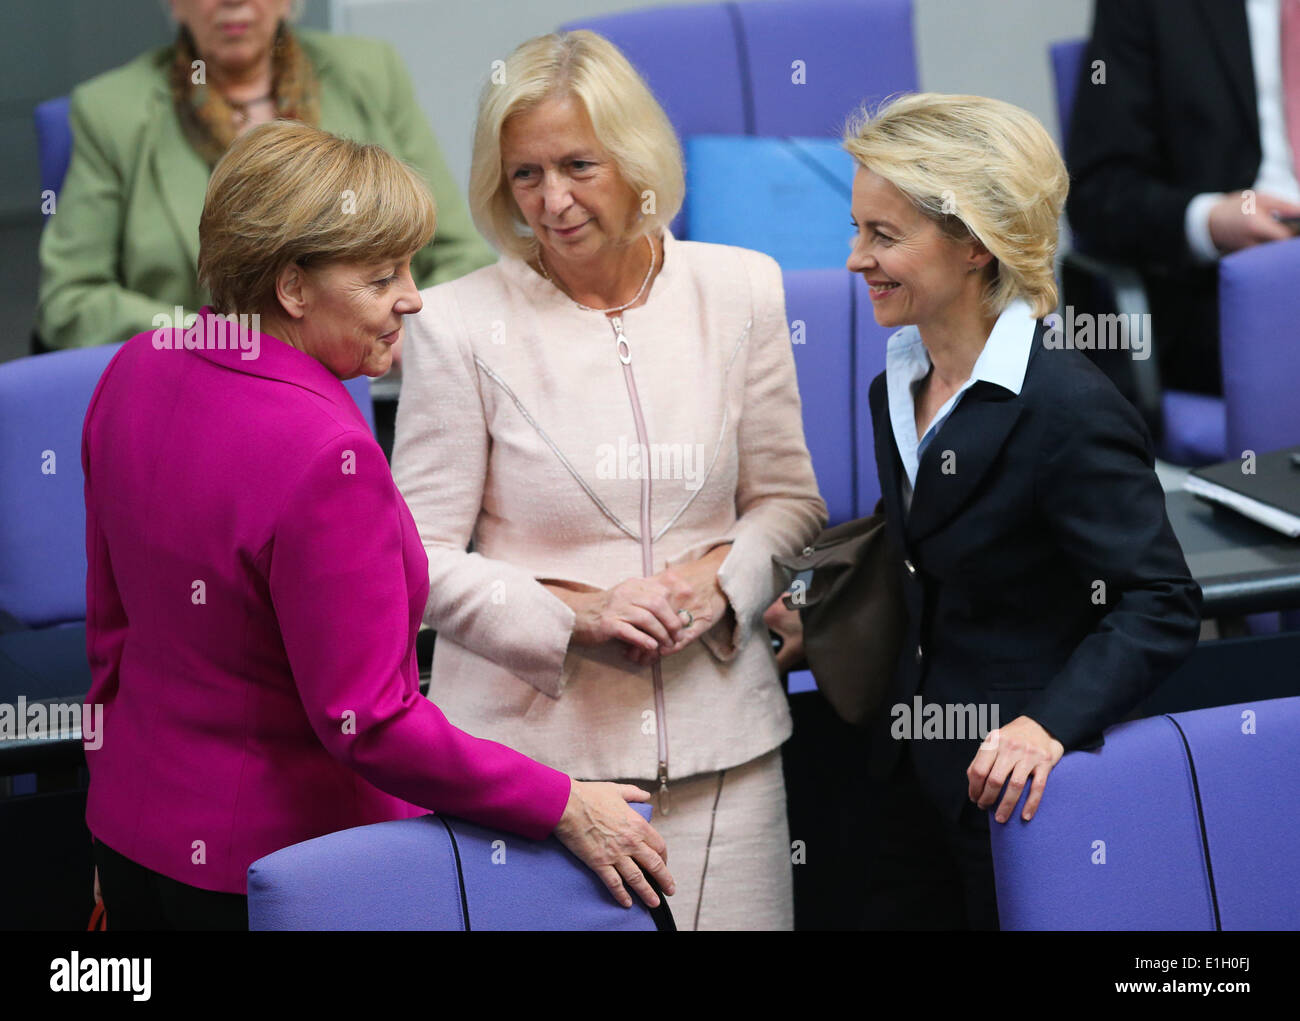 Berlín, Alemania. El 4 de junio de 2014. (L-R) La canciller alemana, Angela Merkel, Ministro de Educación e Investigación Alemana Johanna Wanka y el Ministro de Defensa alemán, Ursula von der Leyen asistir a una reunión en el Bundestag, la cámara baja del parlamento, en Berlín, Alemania, el 4 de junio de 2014. La Cumbre del G7, fijado para el 4 y 5 de junio en Bruselas se centrará en la situación de Ucrania, los lazos con Rusia, la economía global y la seguridad energética, según la agenda preliminar presentado por la Unión Europea (UE). Crédito: Zhang Xinhua/ventilador/Alamy Live News Foto de stock